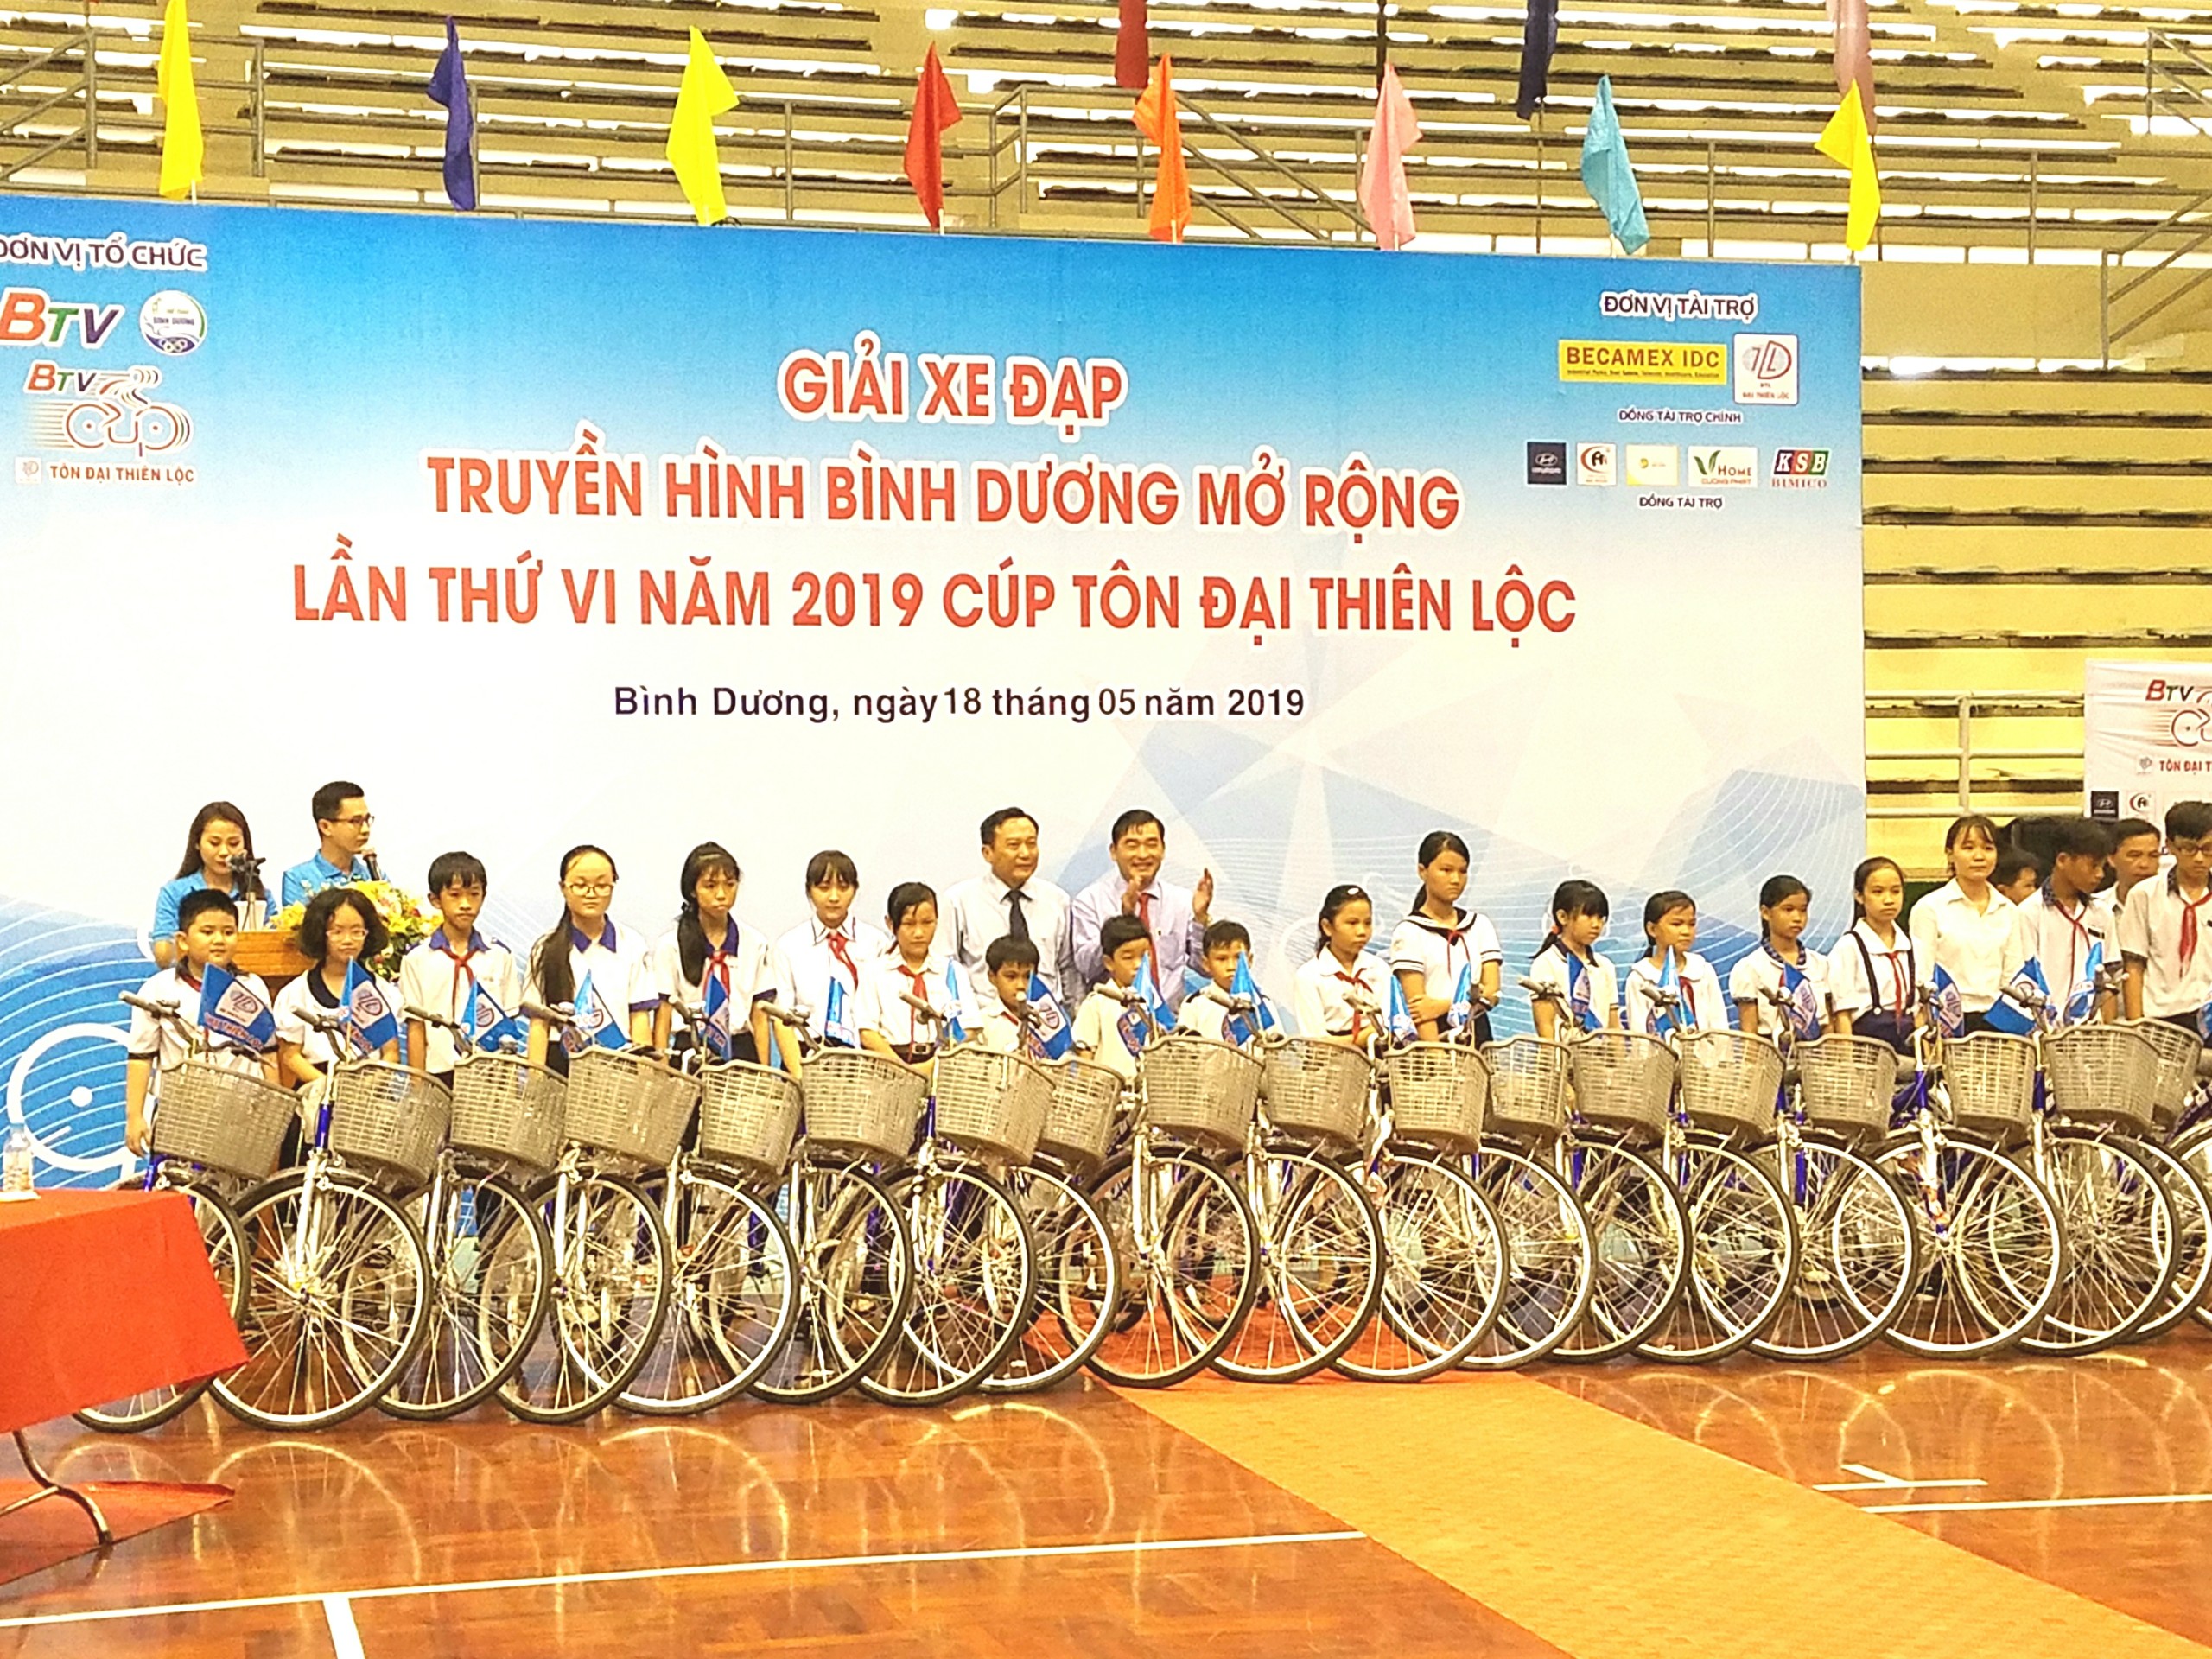 Chặng 3 Giải xe đạp Truyền hình Bình Dương mở rộng lần thứ VI Cúp Tôn Đại Thiên Lộc